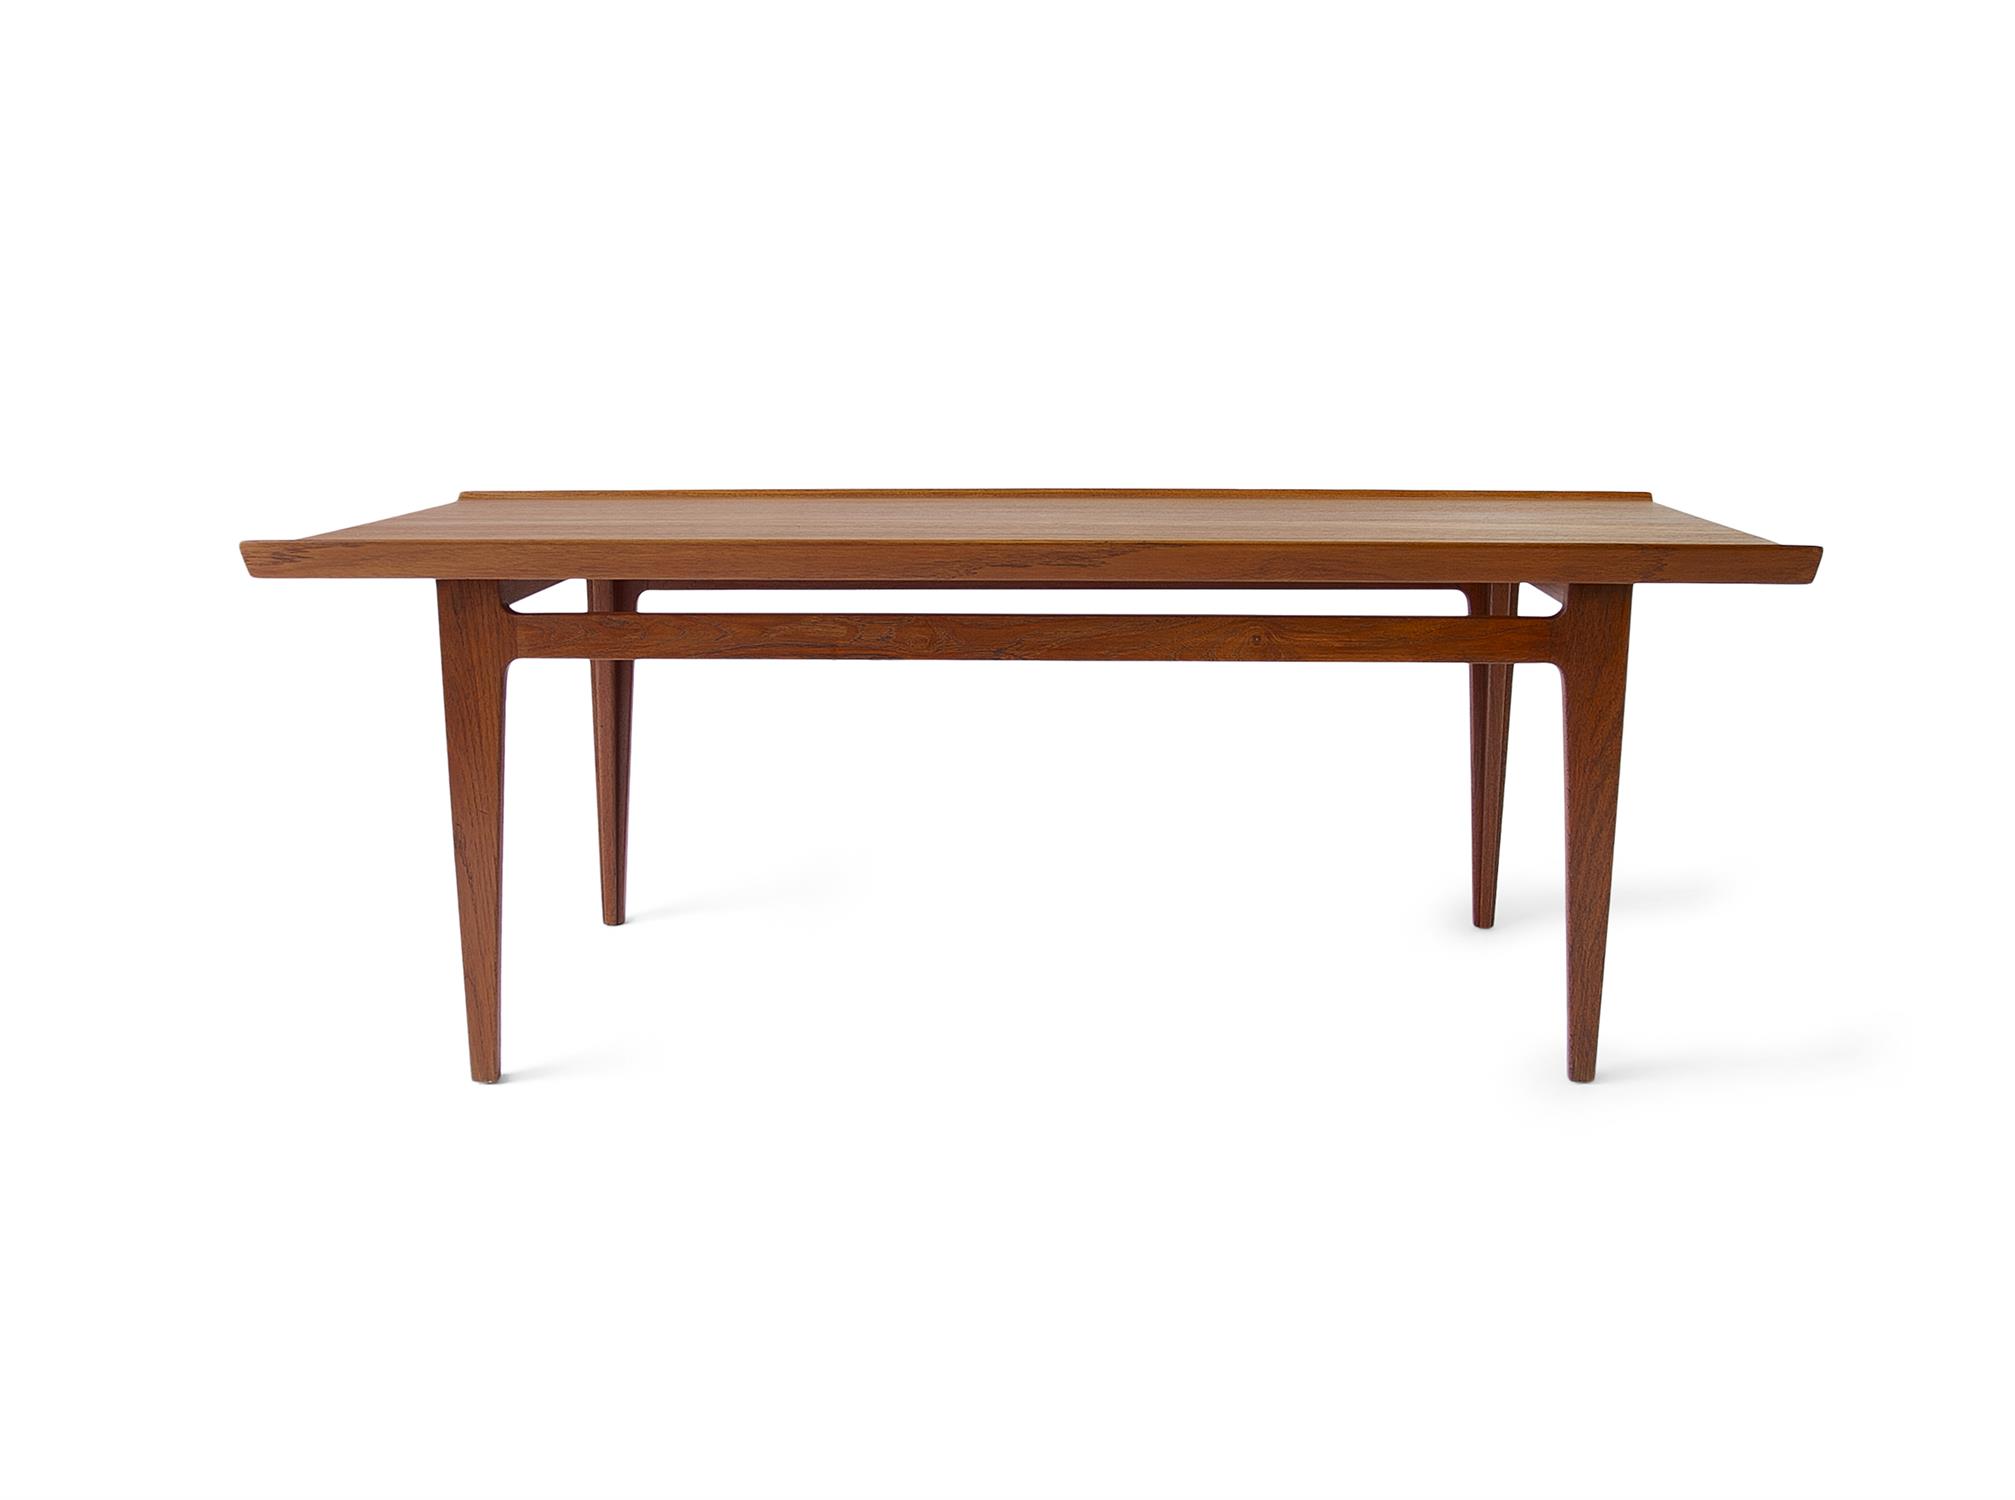 FINN JUHL (1912 - 1989) A teak coffee table by Finn Juhl for France & Sons. Denmark, c.1960.